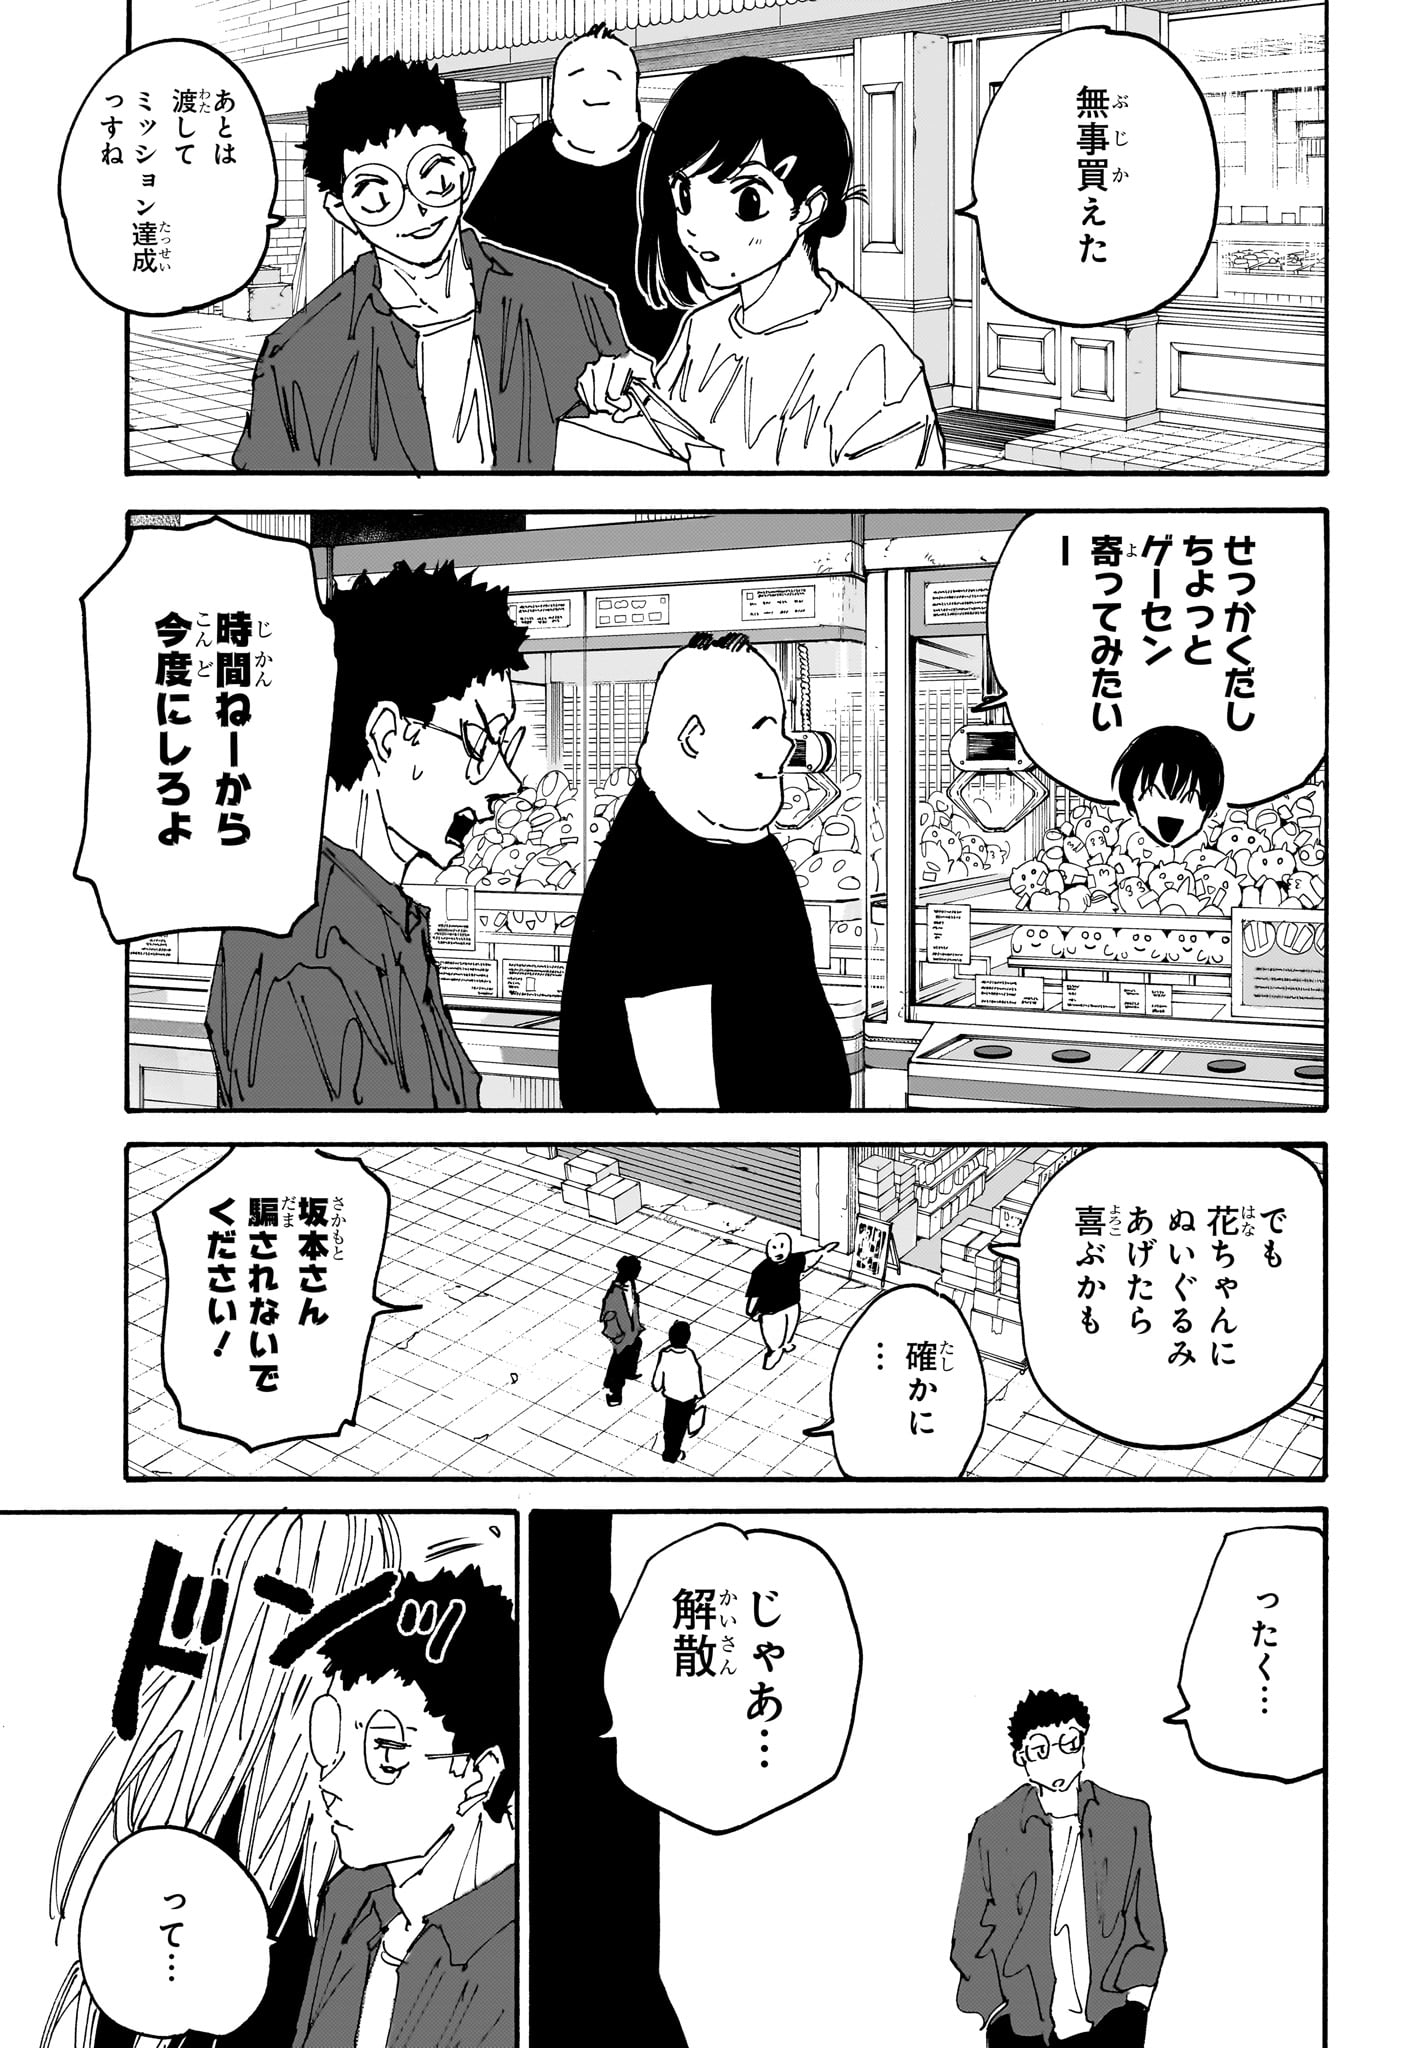 Sakamoto Days - Chapter 169 - Page 17